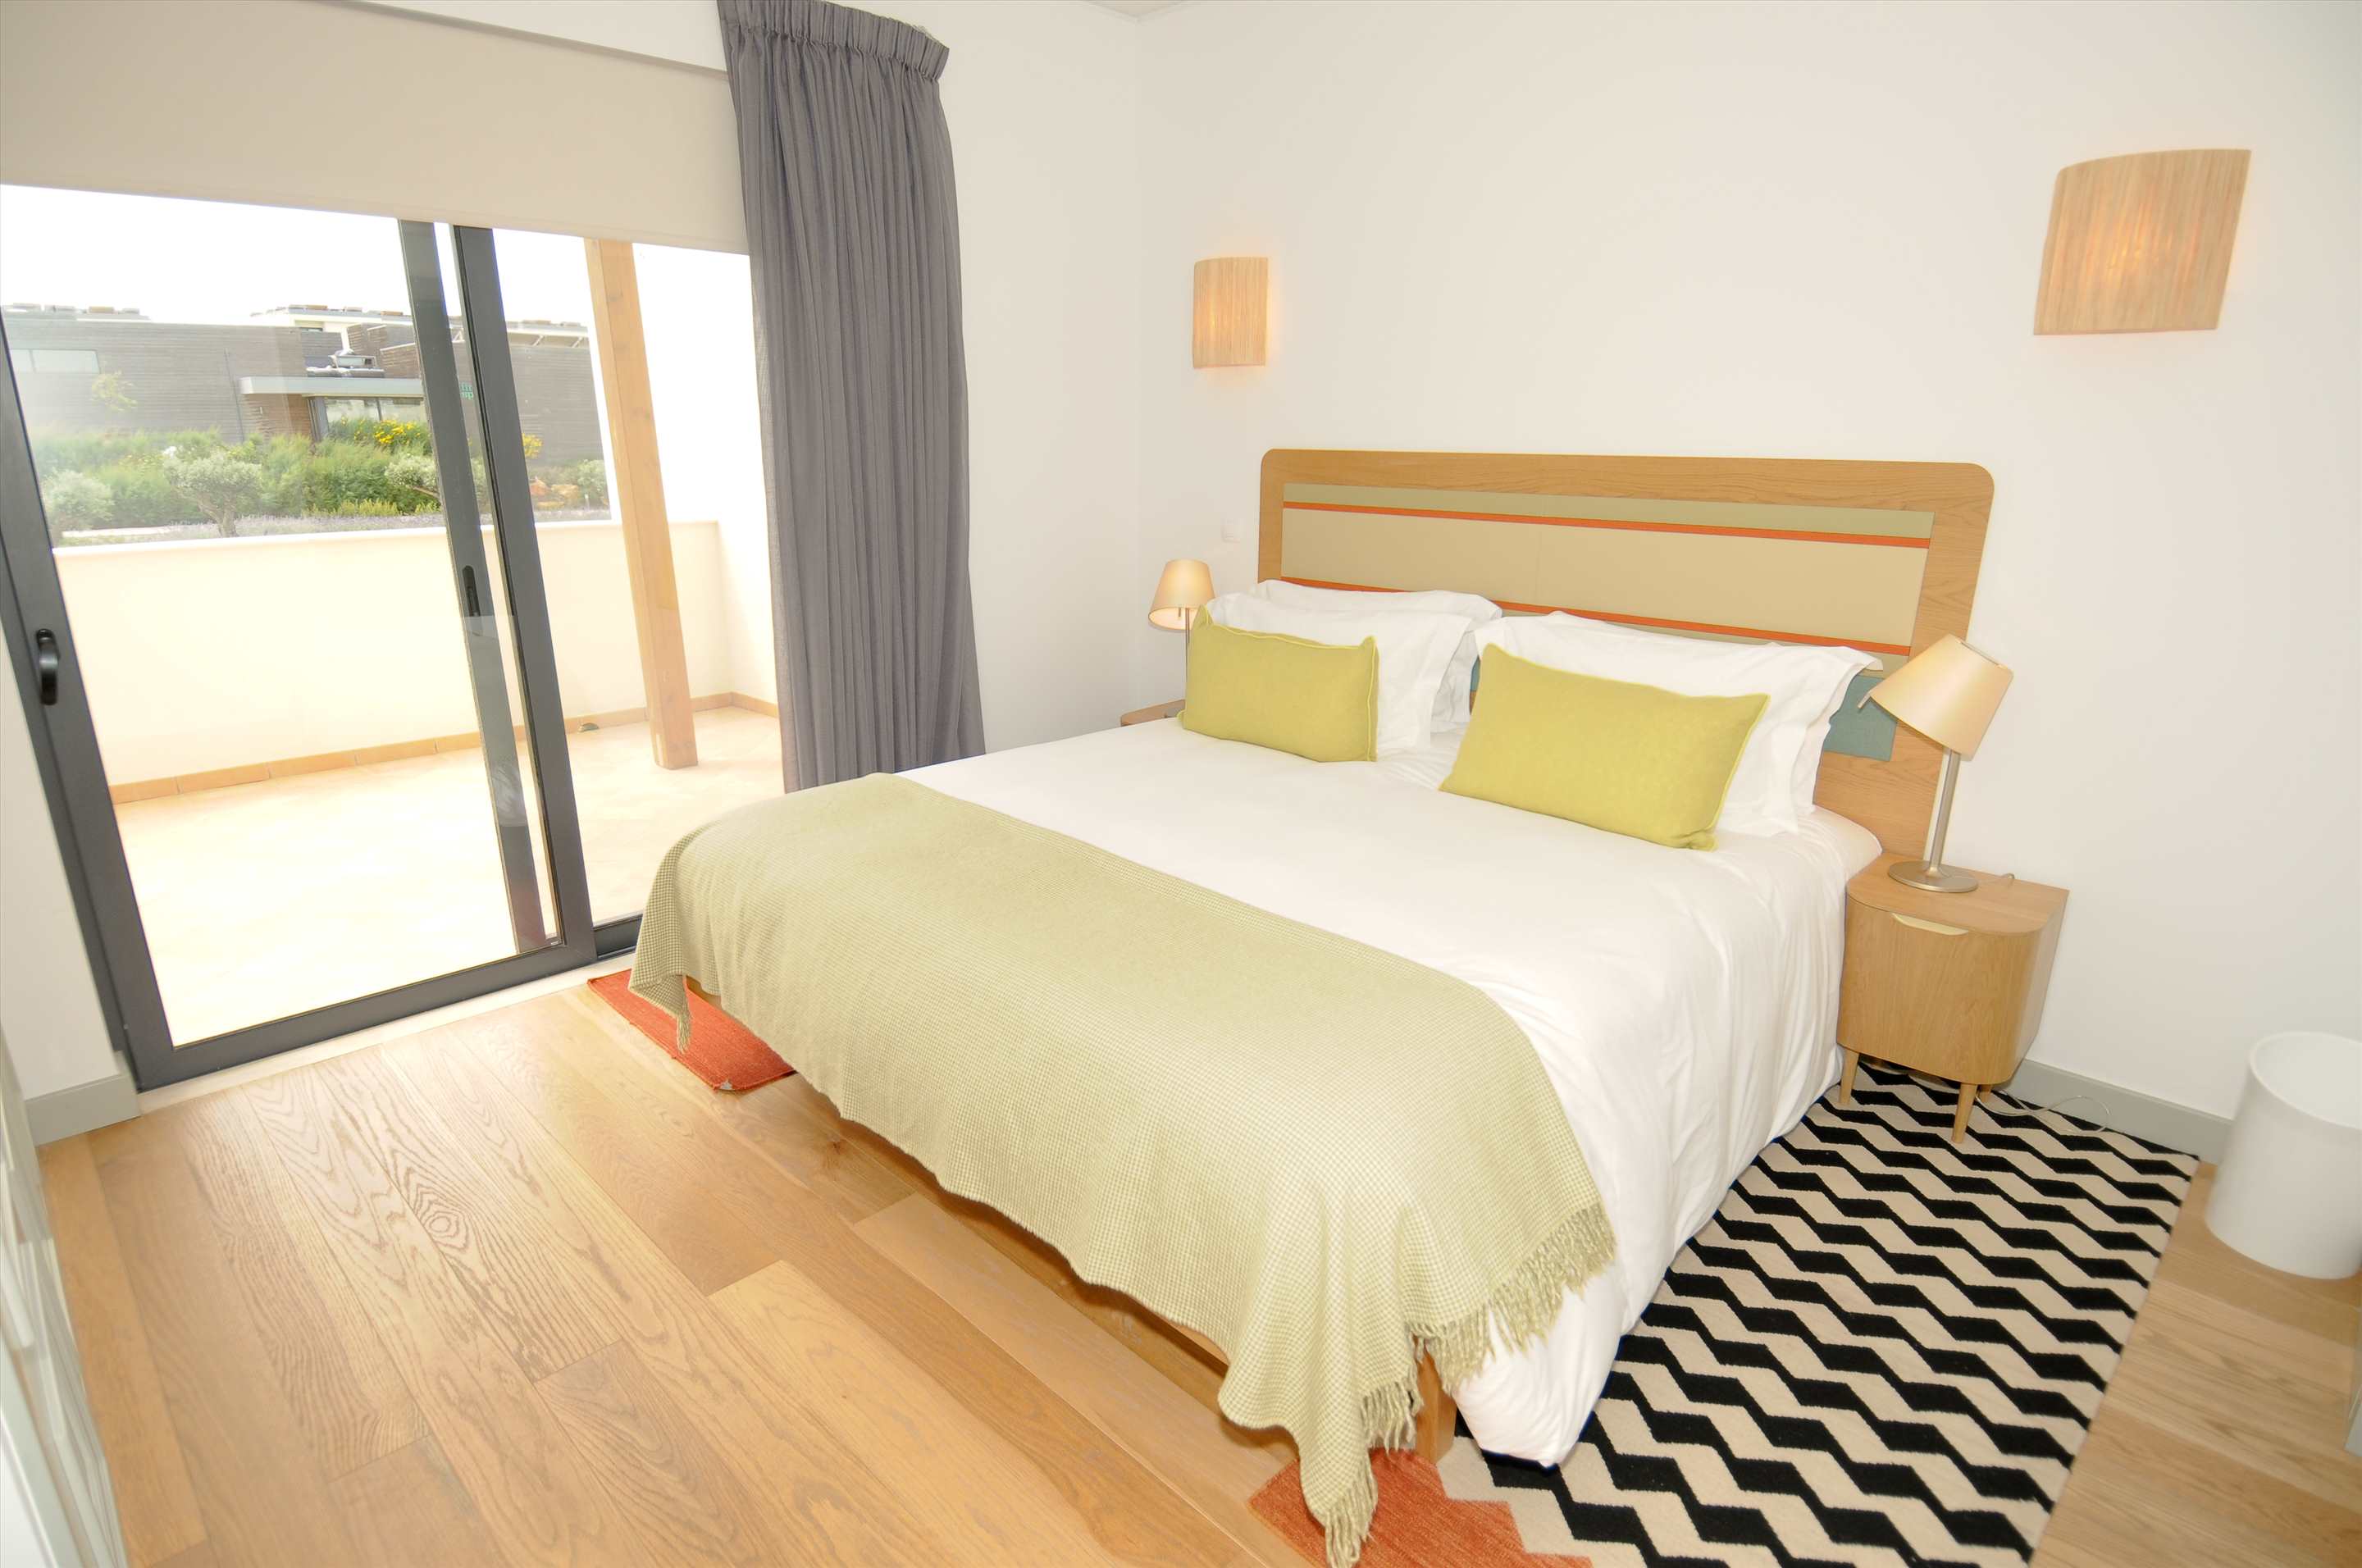 Martinhal Village Garden House, Deluxe One Bedroom plus Bunk Bed, 1 bedroom villa in Martinhal Sagres, Algarve Photo #6